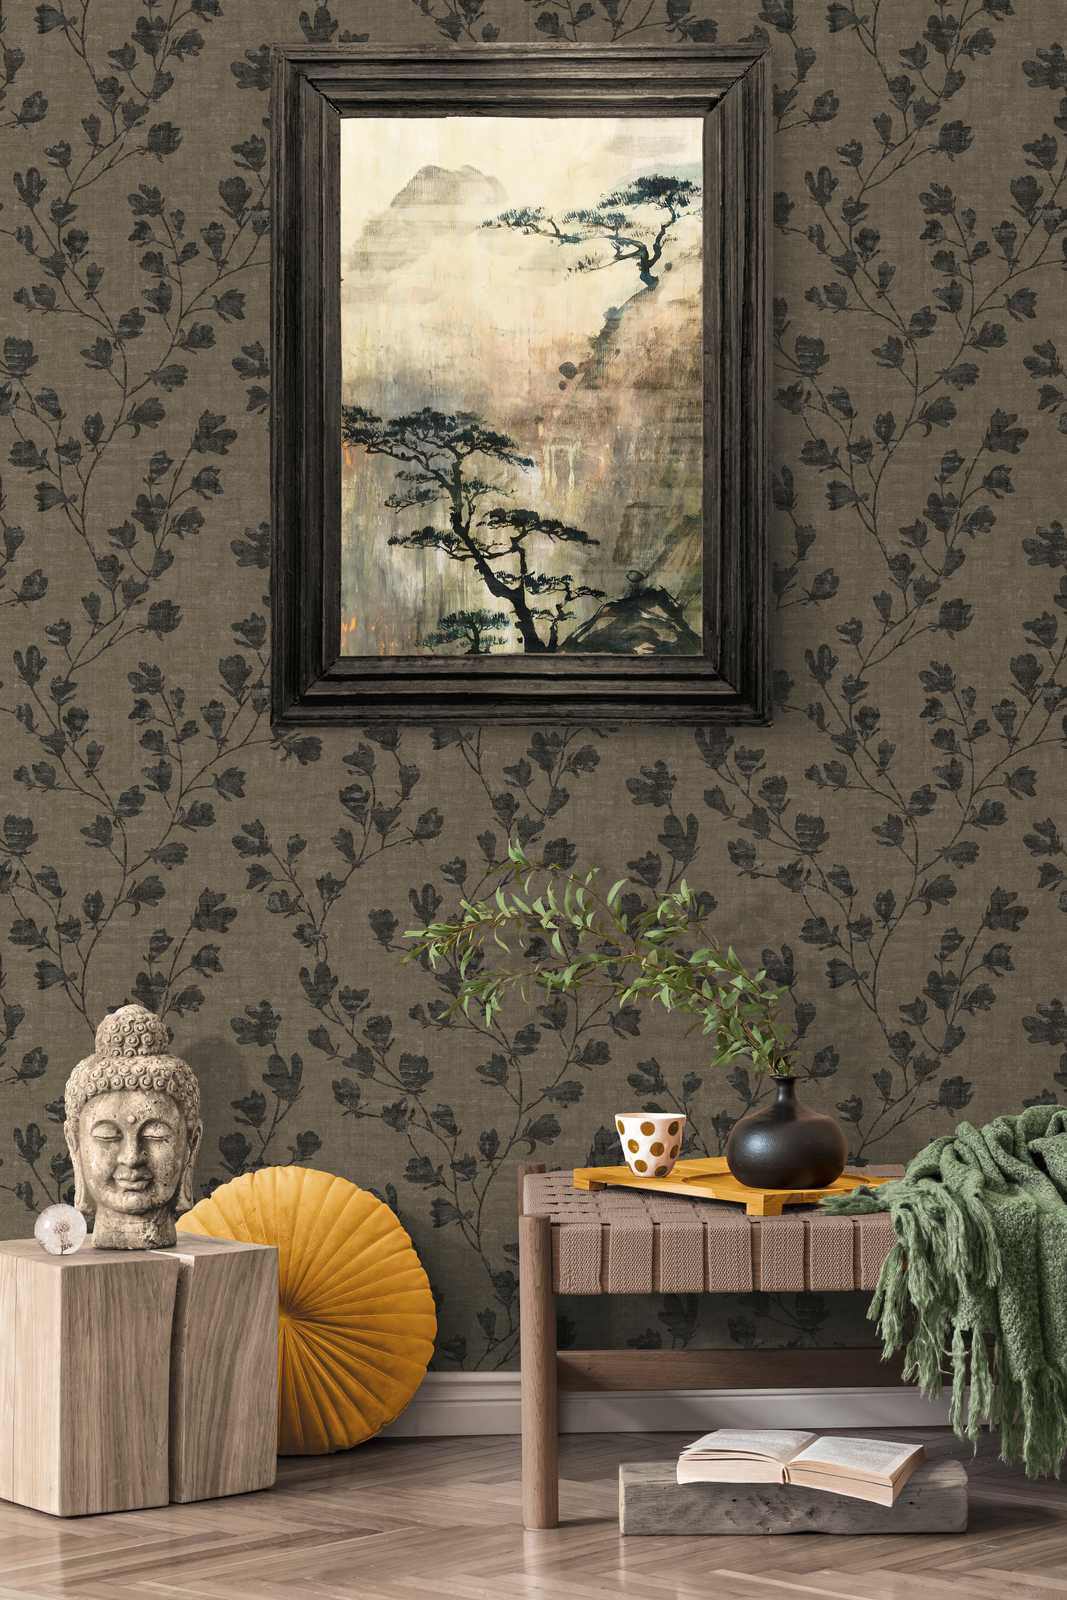             Papel pintado no tejido con diseño de zarcillos de hojas - marrón, negro
        